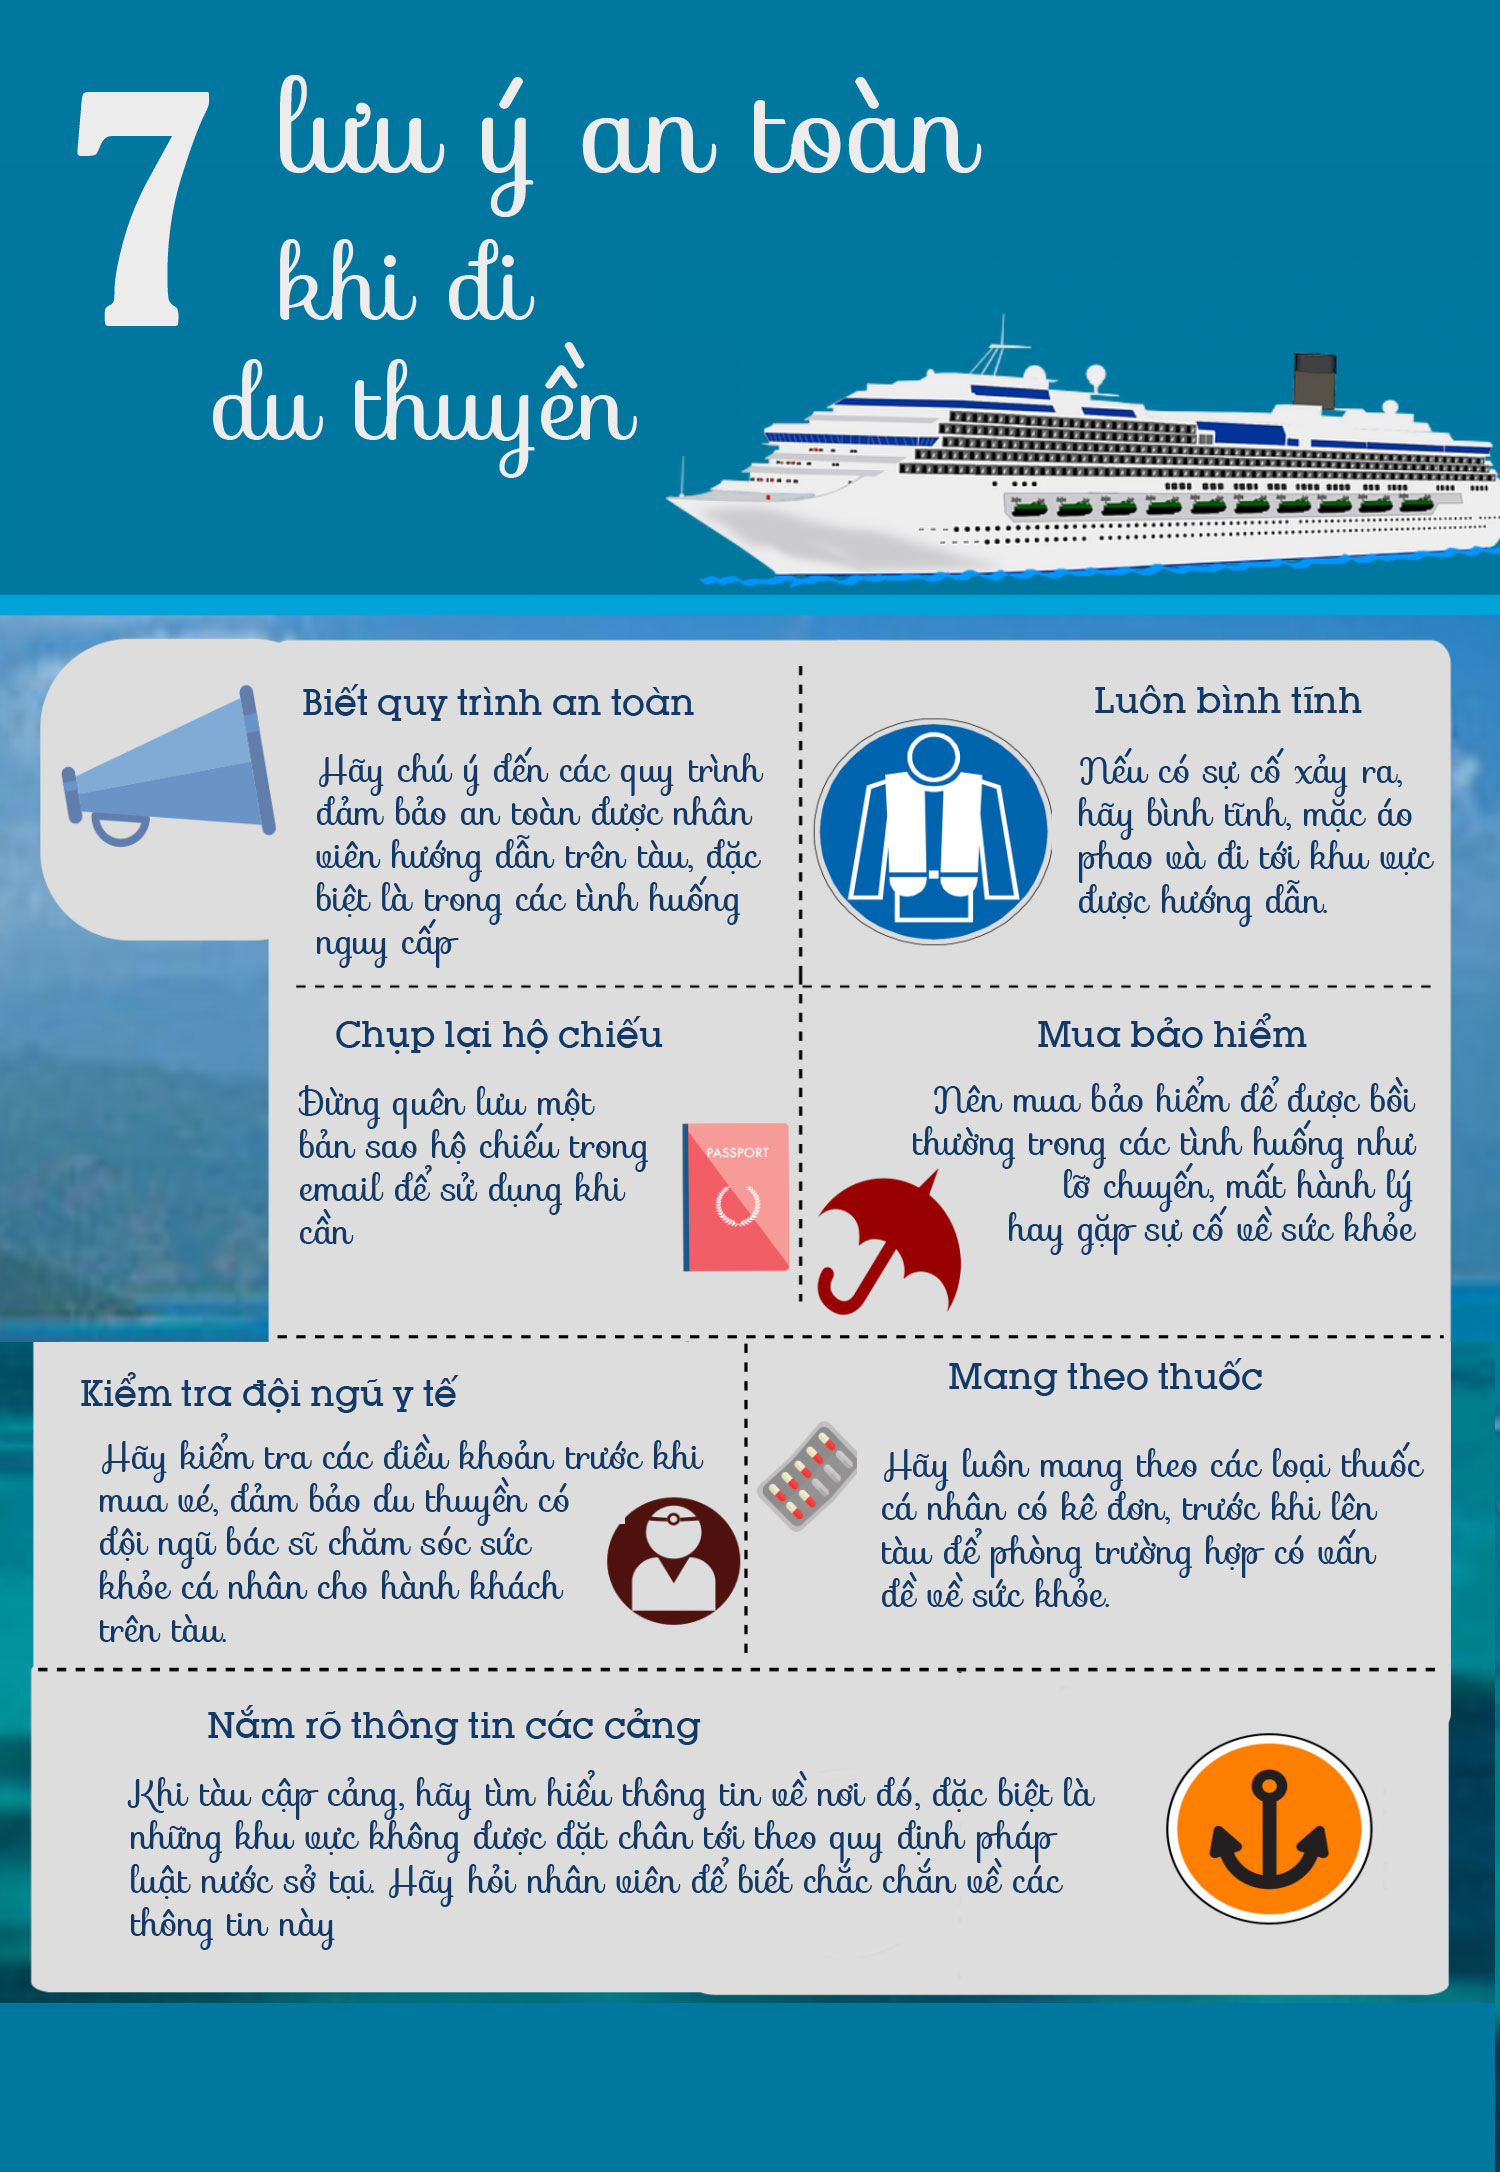 7 lưu ý an toàn khi đi du thuyền